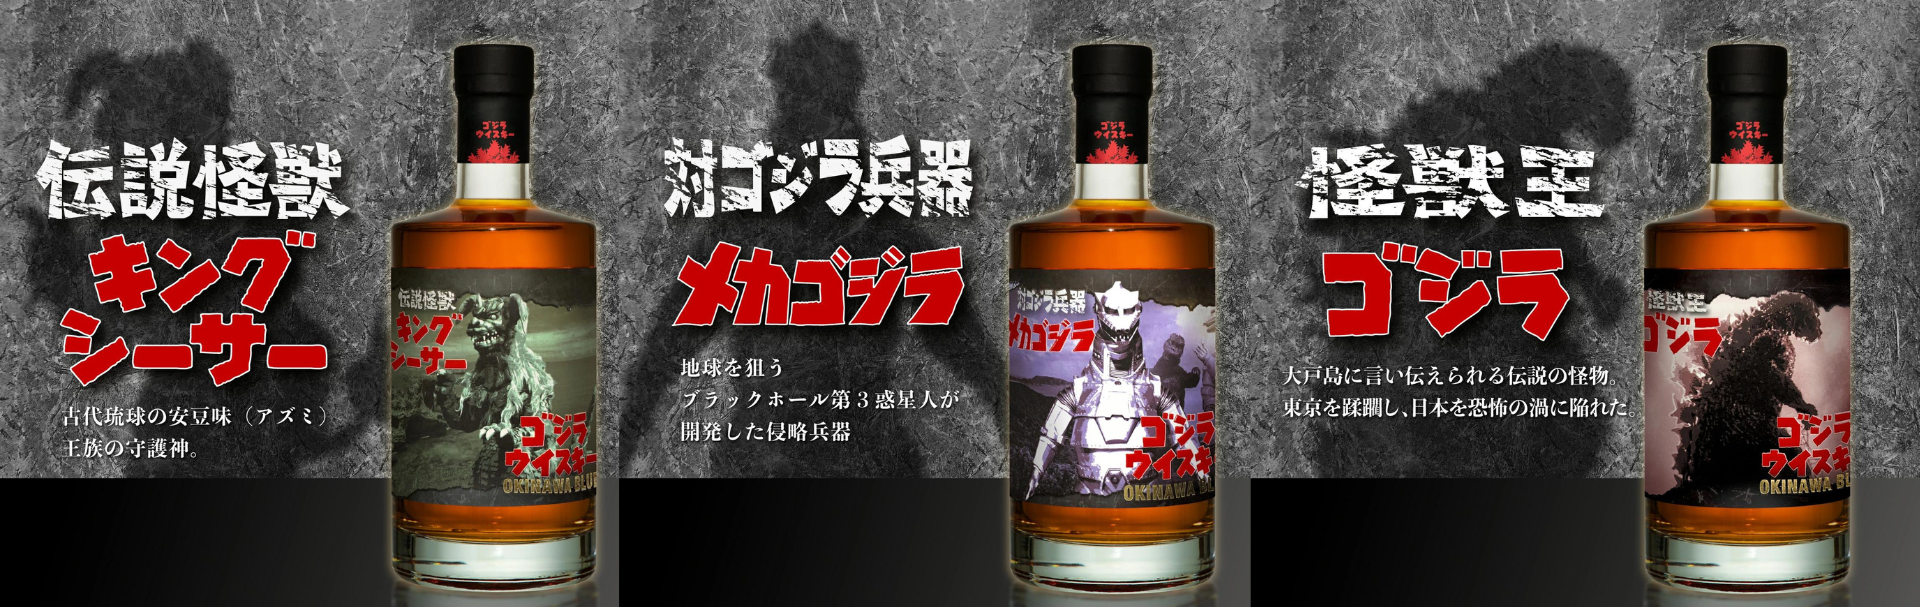 哥吉拉大戰機械哥吉 拉久米泉酒造  - 哥吉拉威士忌 OKINAWA BLUE 